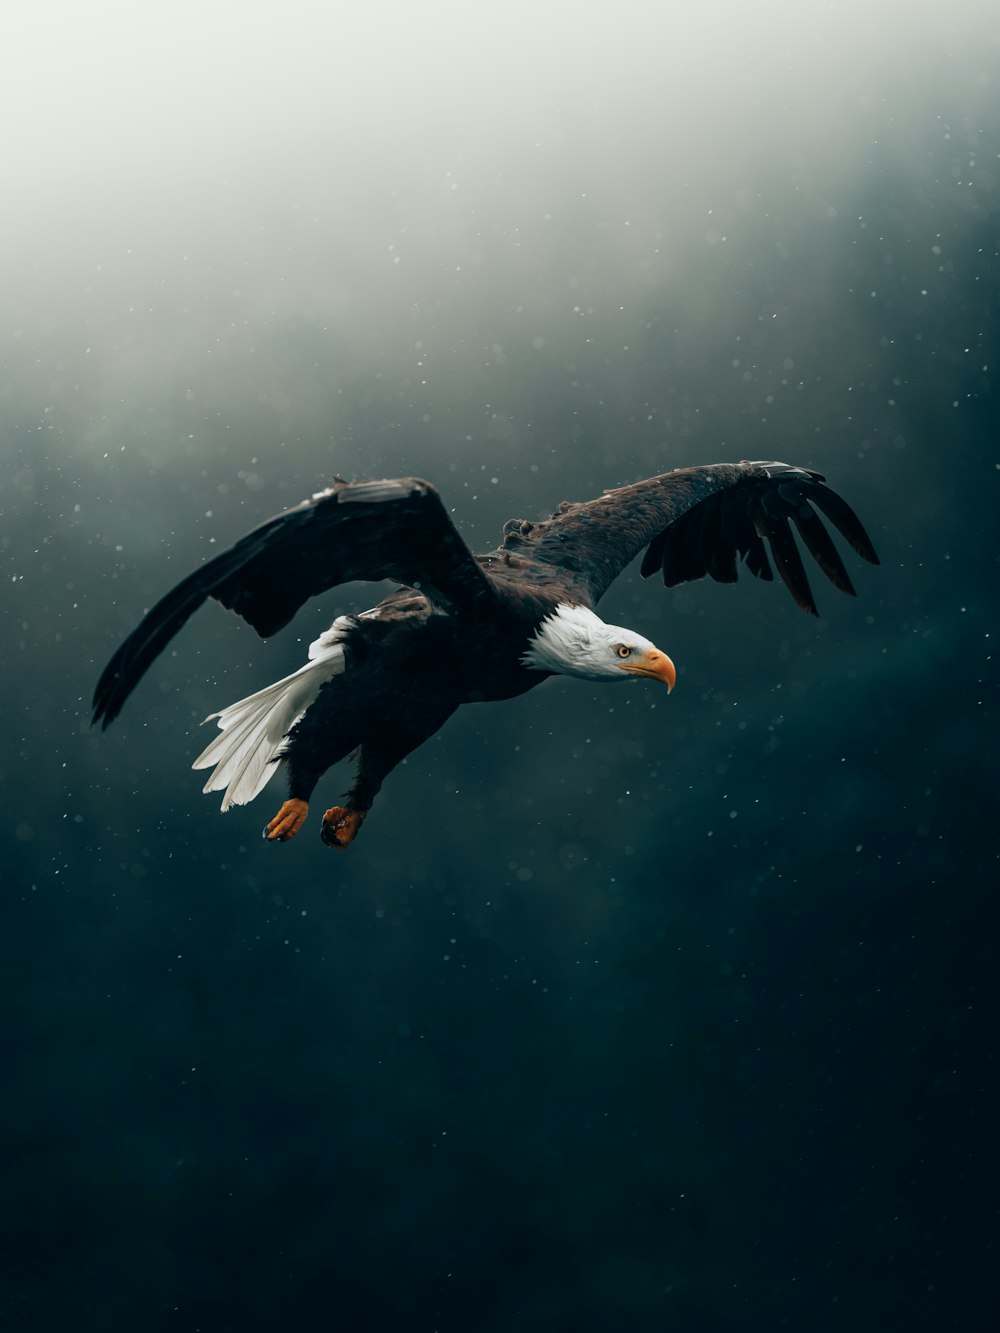 águia preta e branca voando